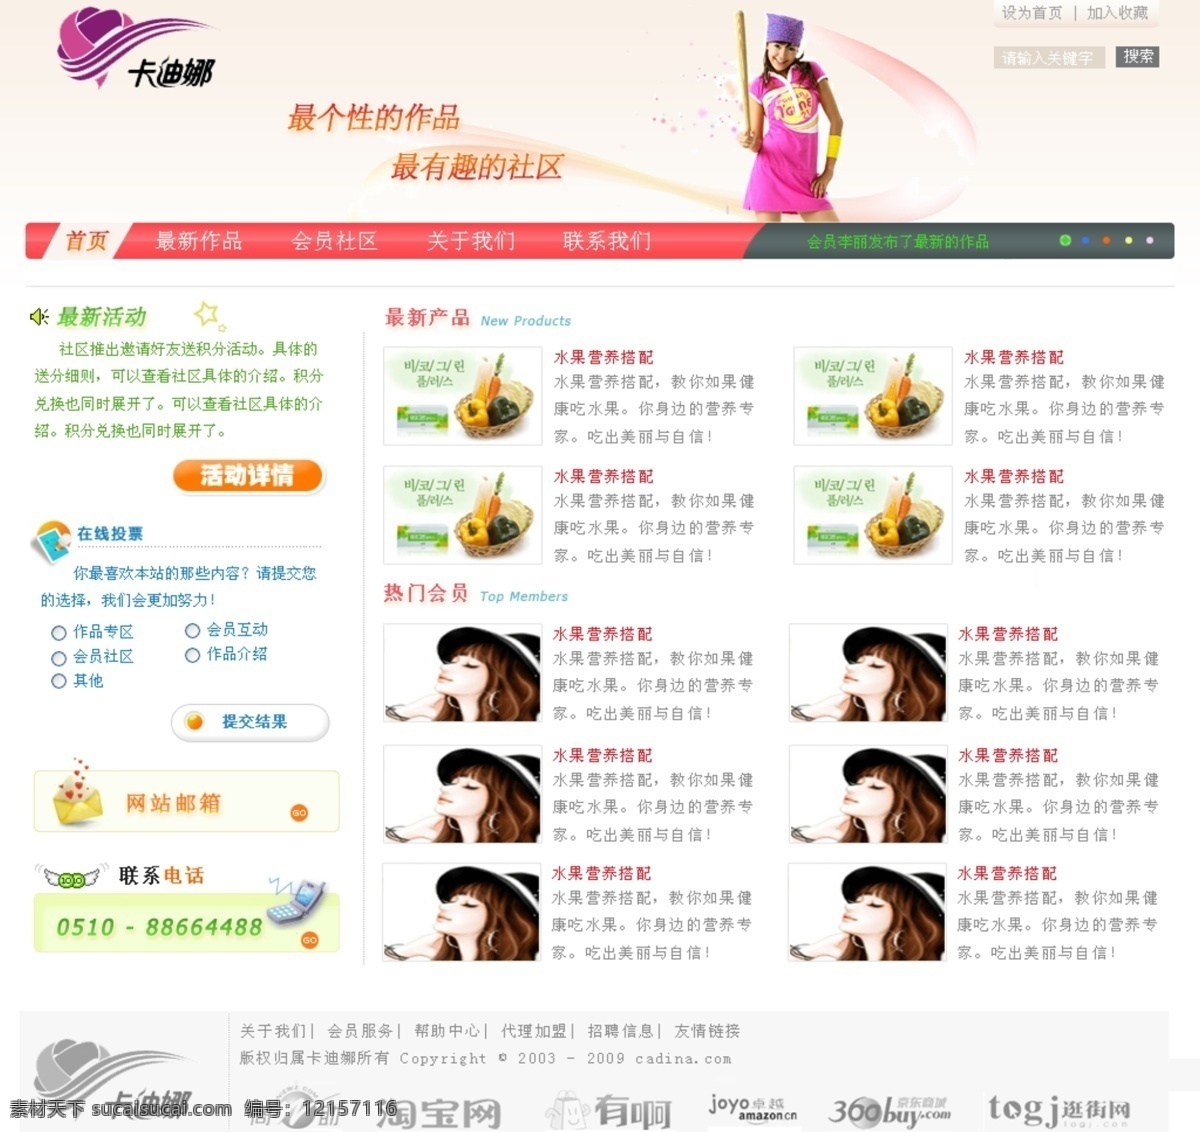 网页设计 产品展示 美女 网页模板 源文件 中文模版 精美导航 多功能 展示 网页 网页素材 导航菜单